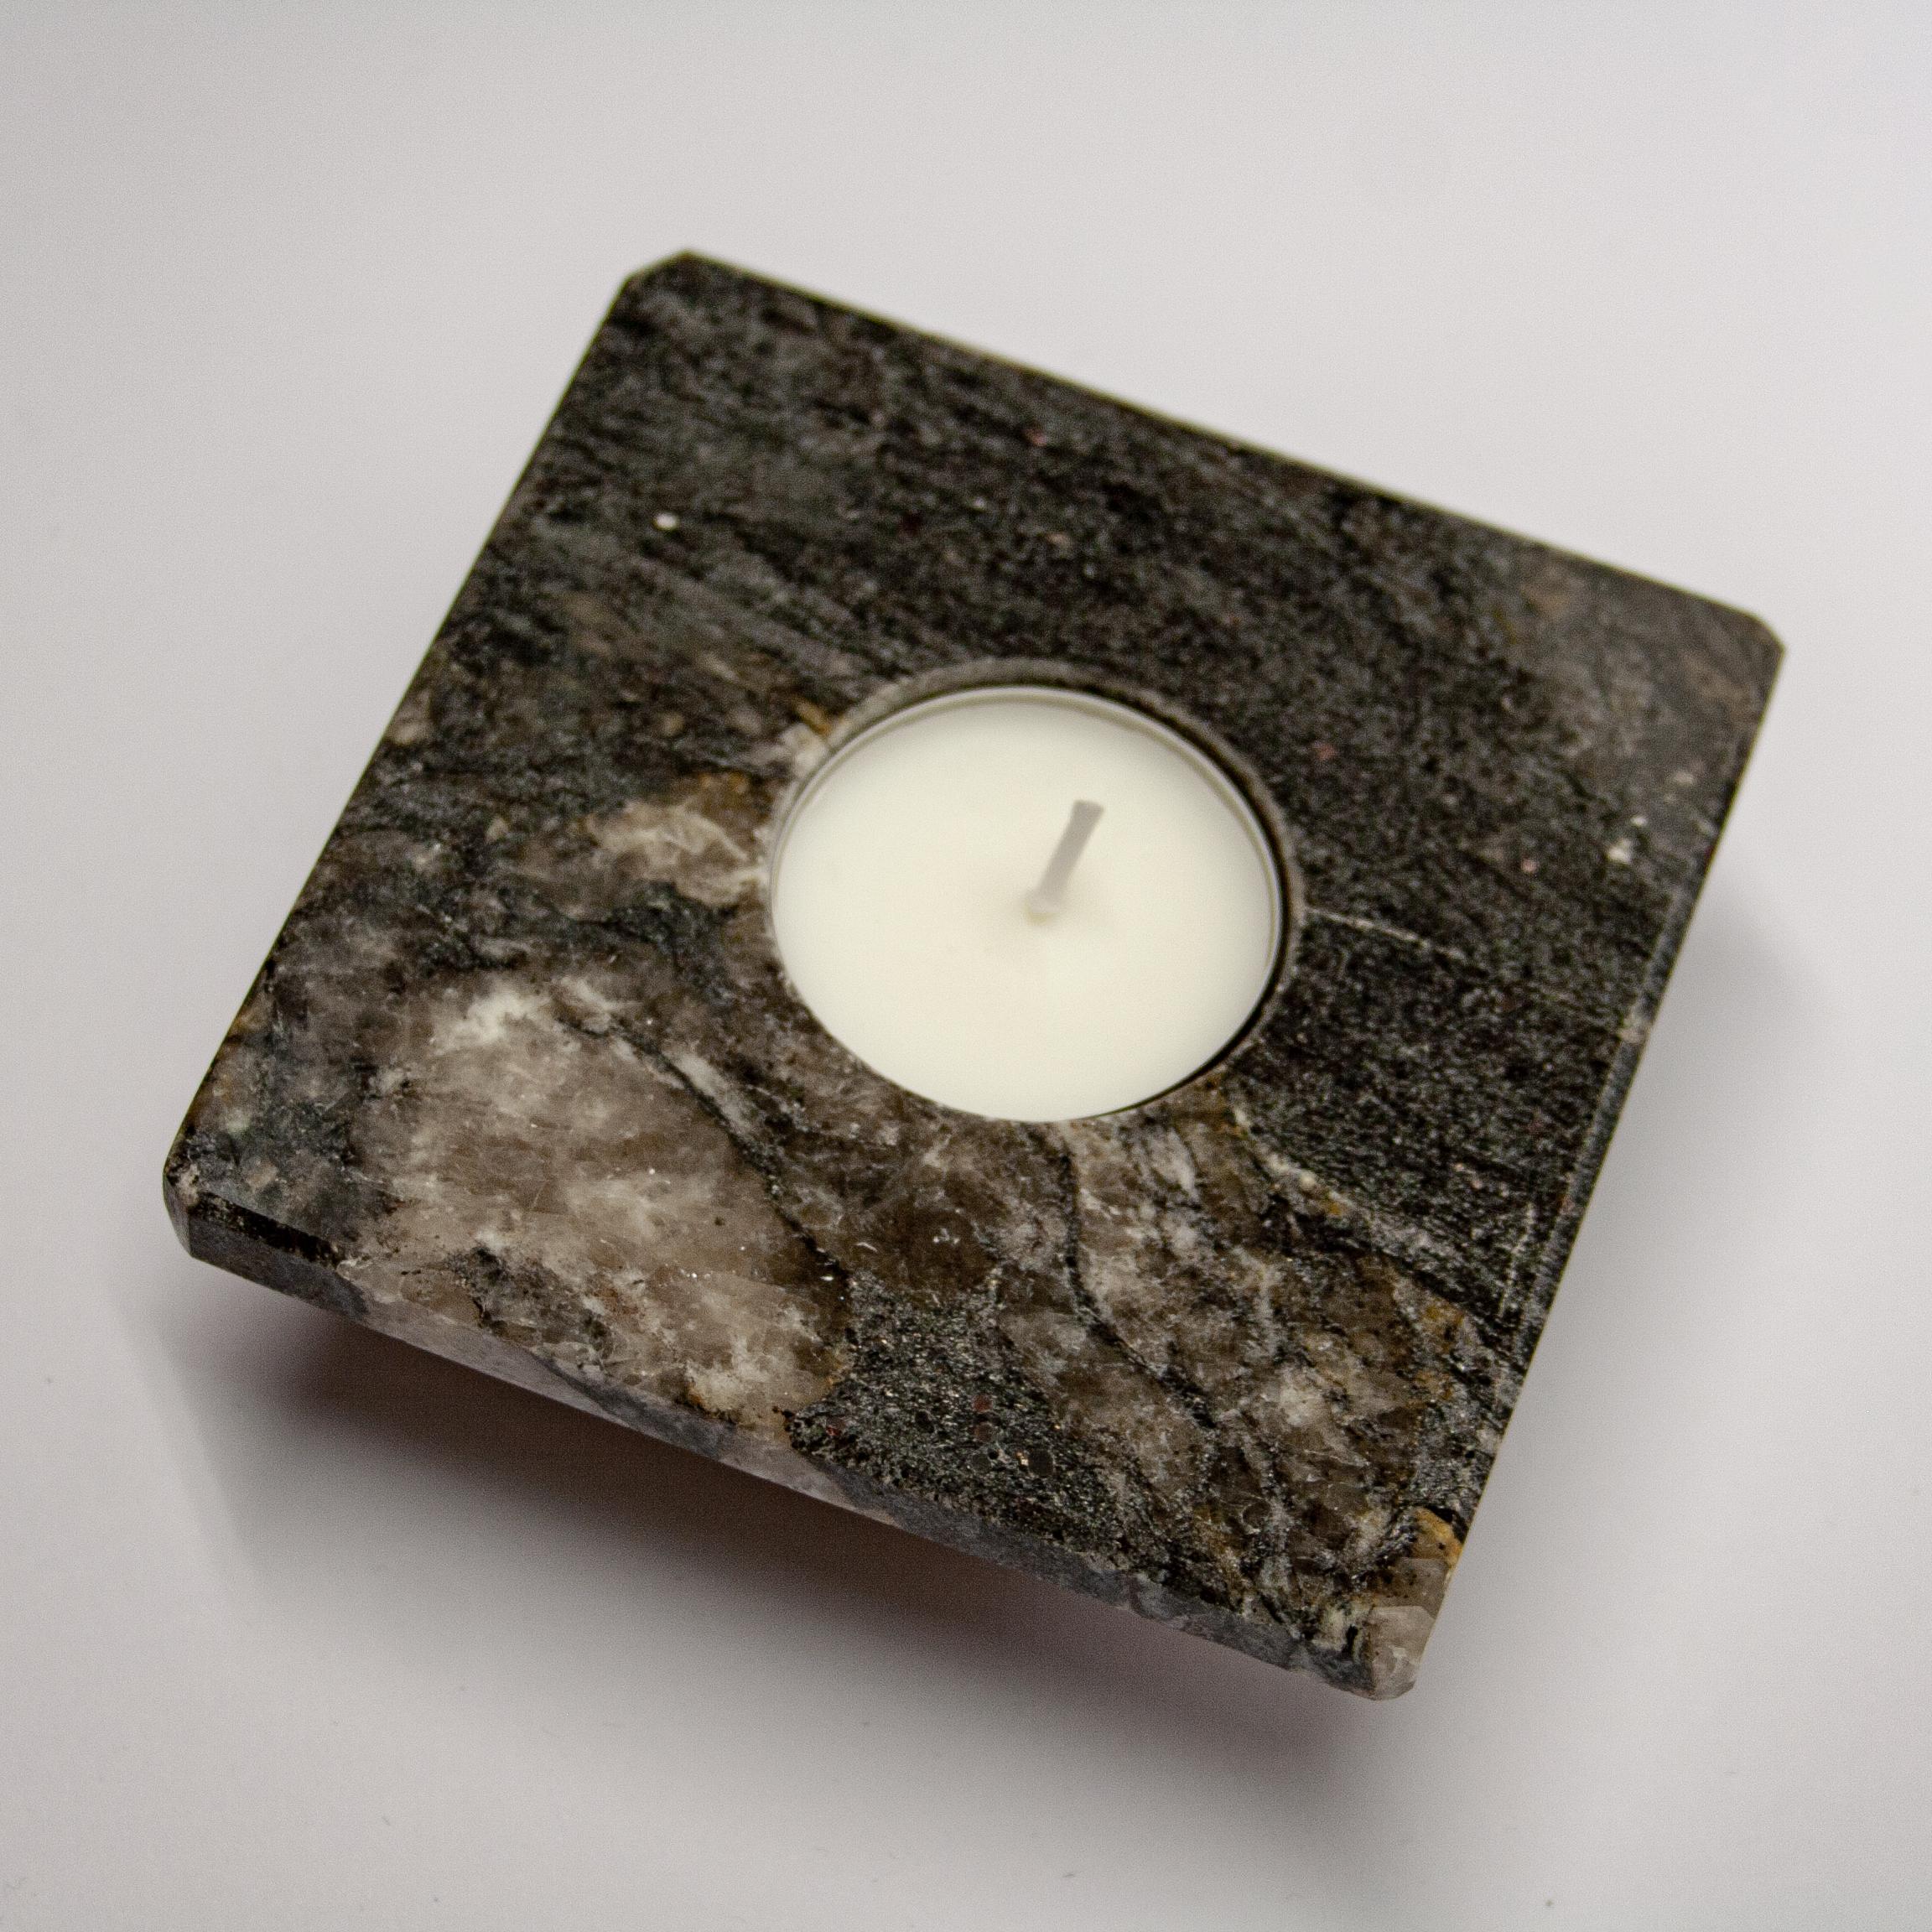 Kerzenständer Schwarzer Granit Weißer Quarz Geode Inlay Einzigartiges Geschenk zum Muttertag.
Dieses dekorative Objekt ist ein Marmor-Kerzenhalter ist ein einzigartiges Stück, wie es ein Stück Granit mit einer Geode im Inneren und sichtbar auf der